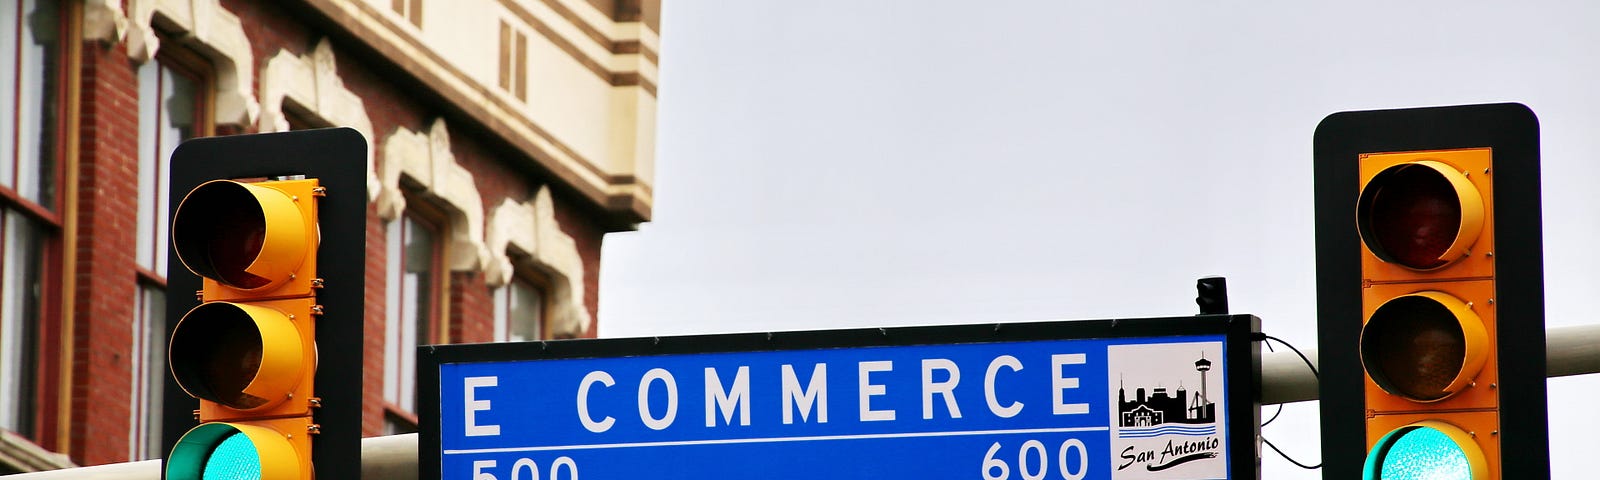 Blue city street sign stating “E COMMERCE”